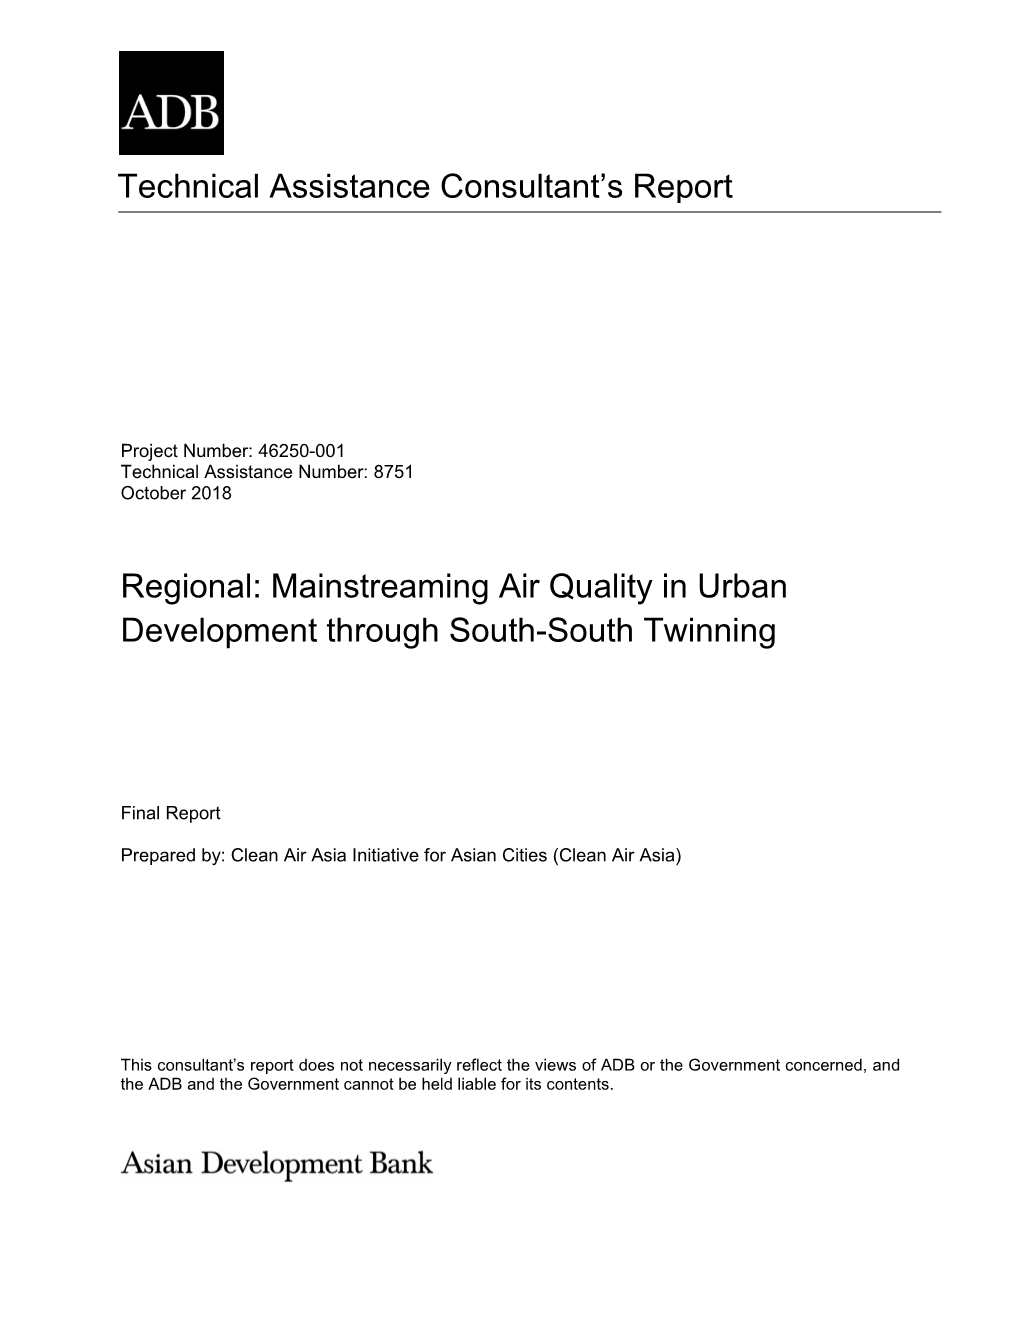 46250-001: Mainstreaming Air Quality in Urban Development Through